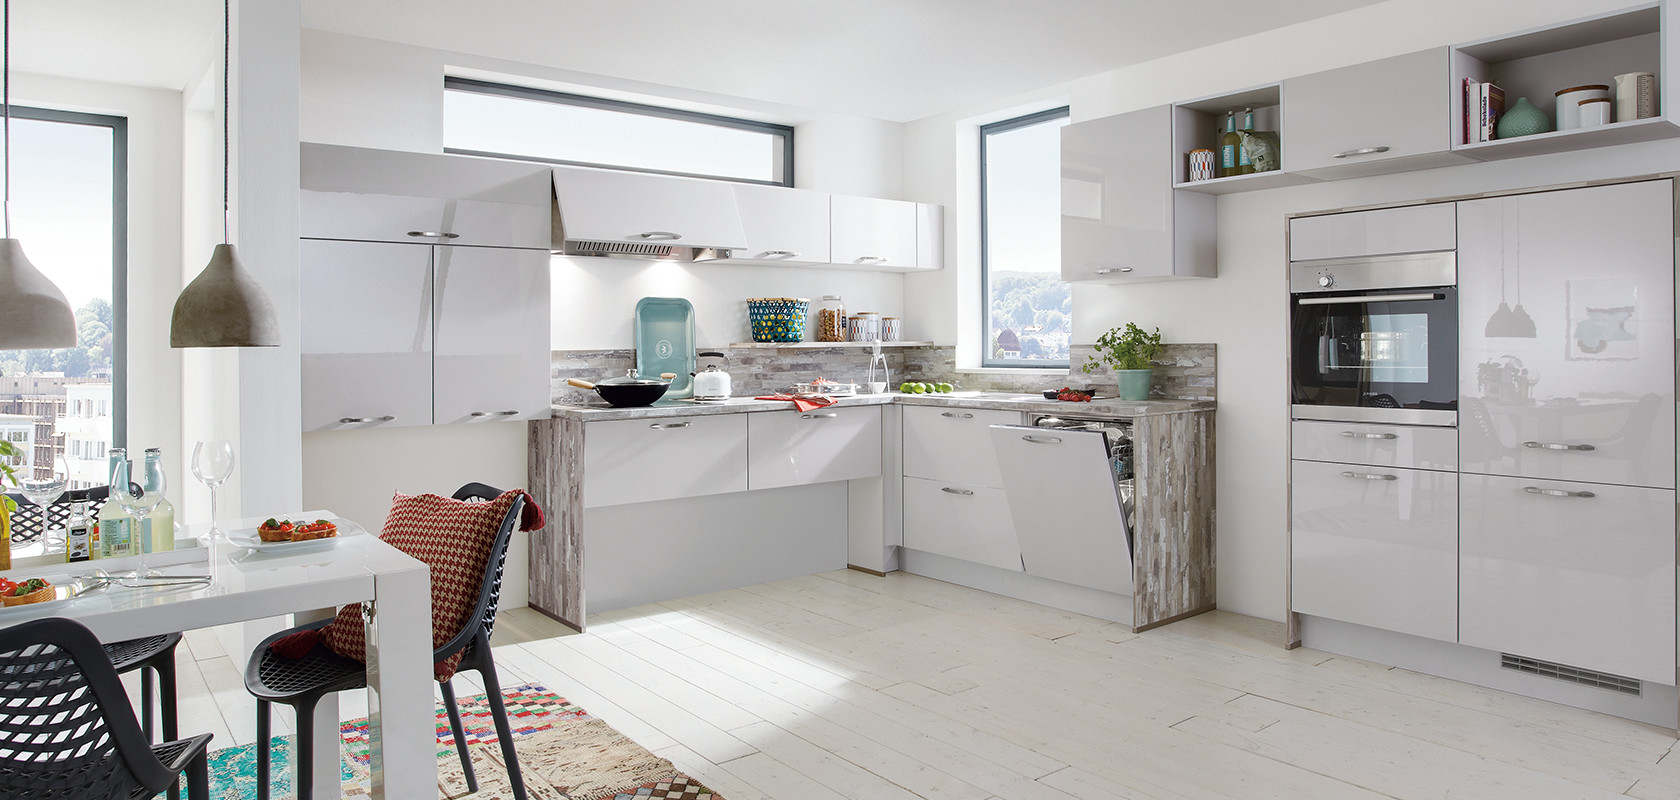 Heldere moderne keuken met witte kasten, roestvrijstalen apparaten en kleuraccenten van decoratieve items en een veelkleurig vloerkleed.